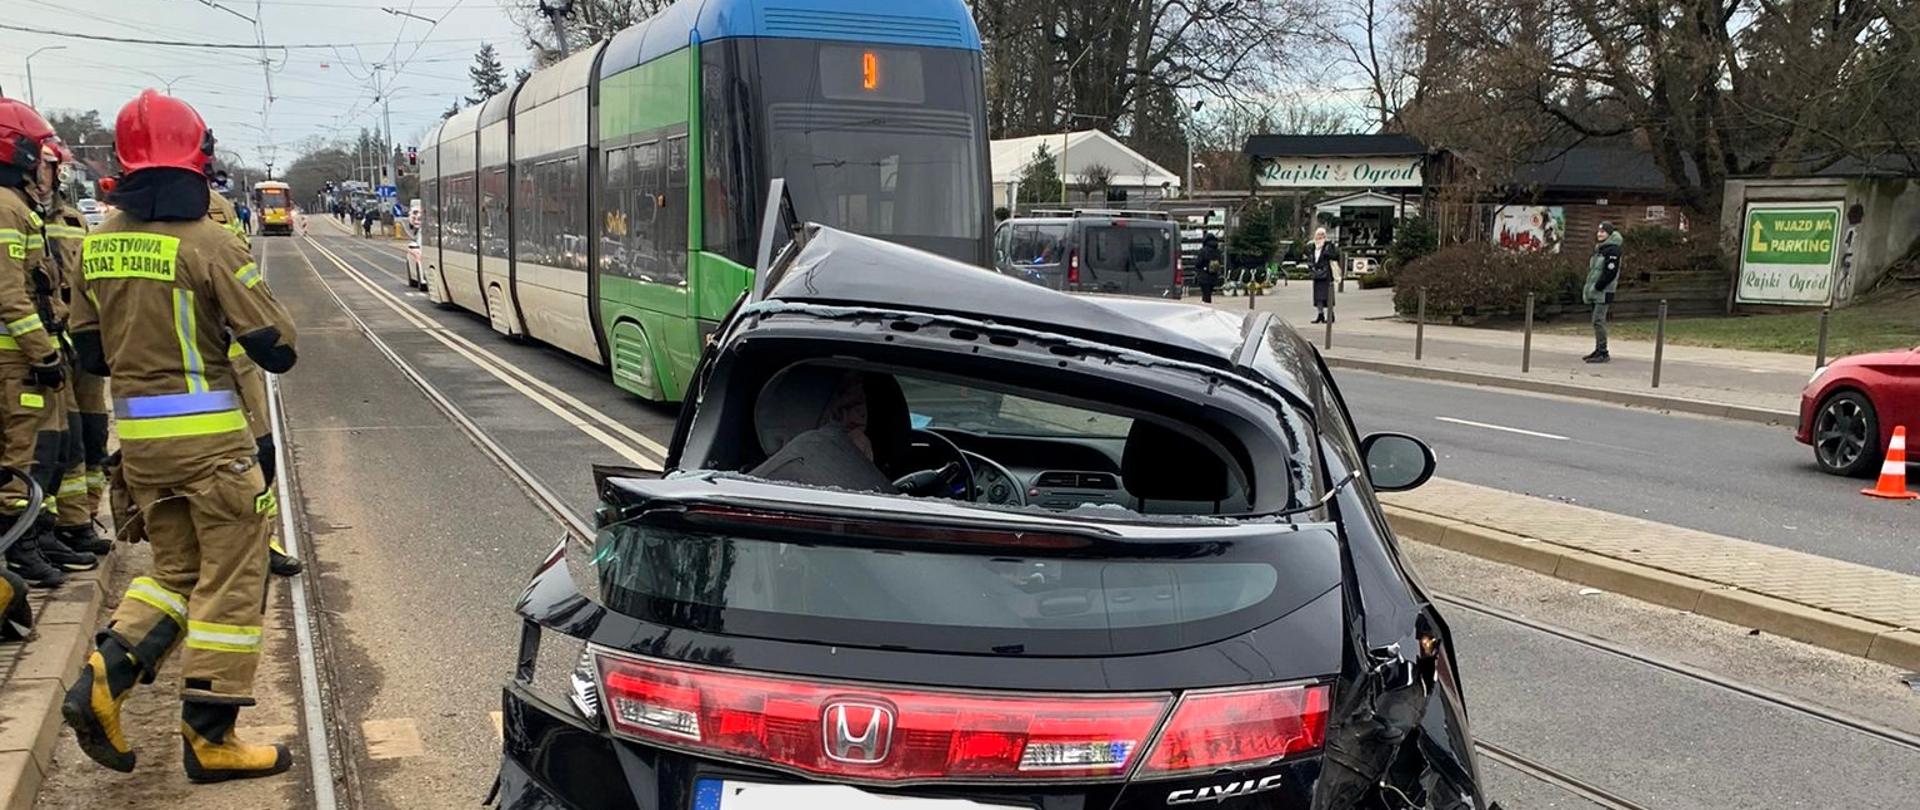 Wypadek przy ulicy Wojska Polskiego samochód osobowy z tramwajem